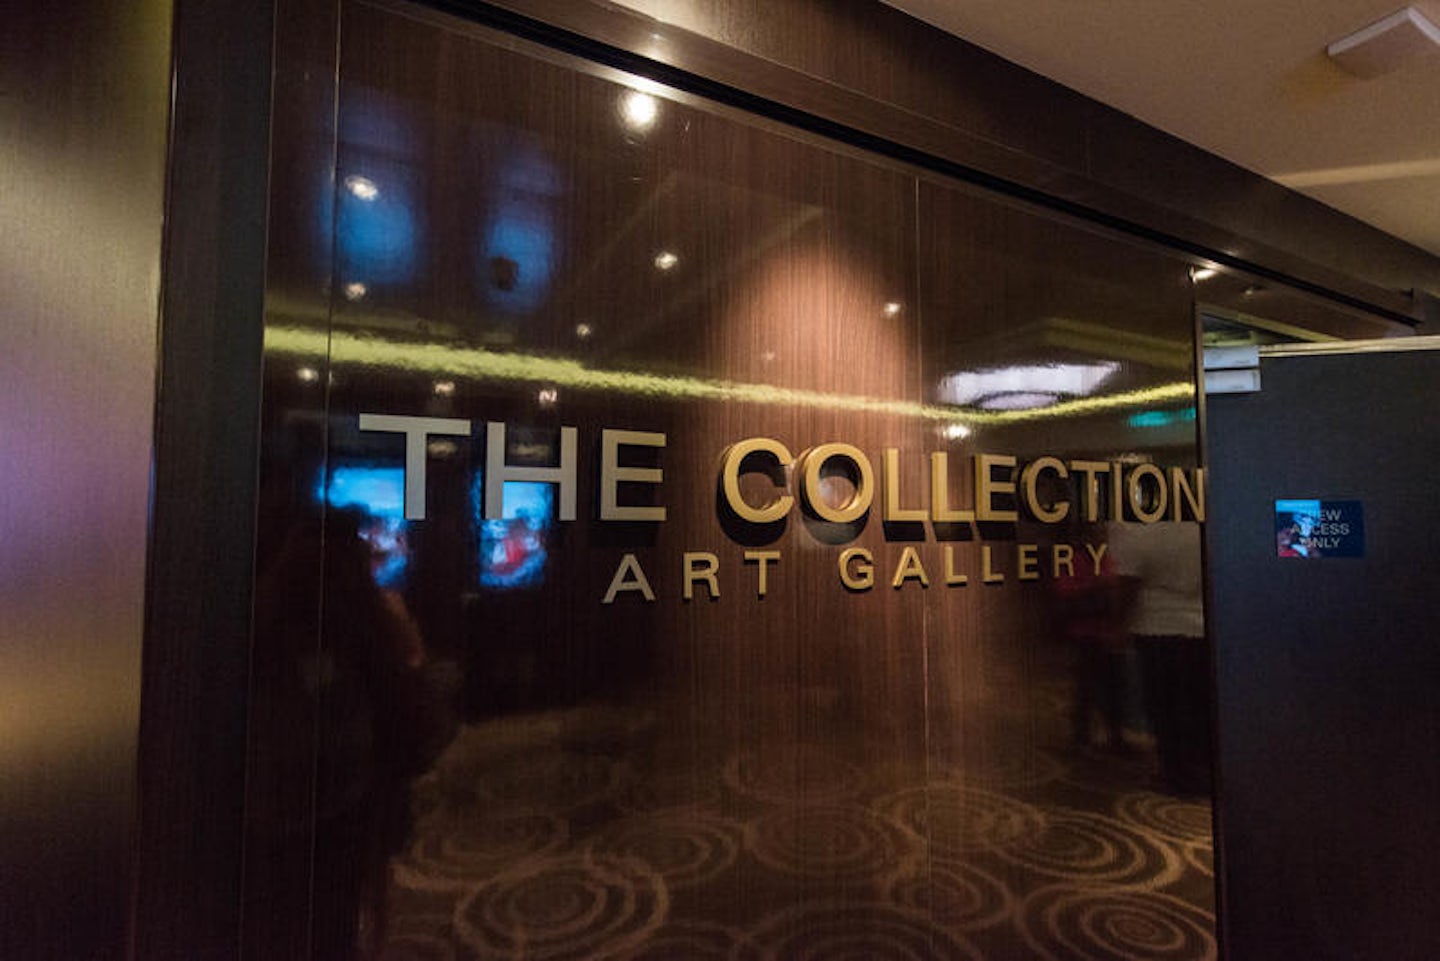 The Collection Art Gallery on Norwegian Breakaway